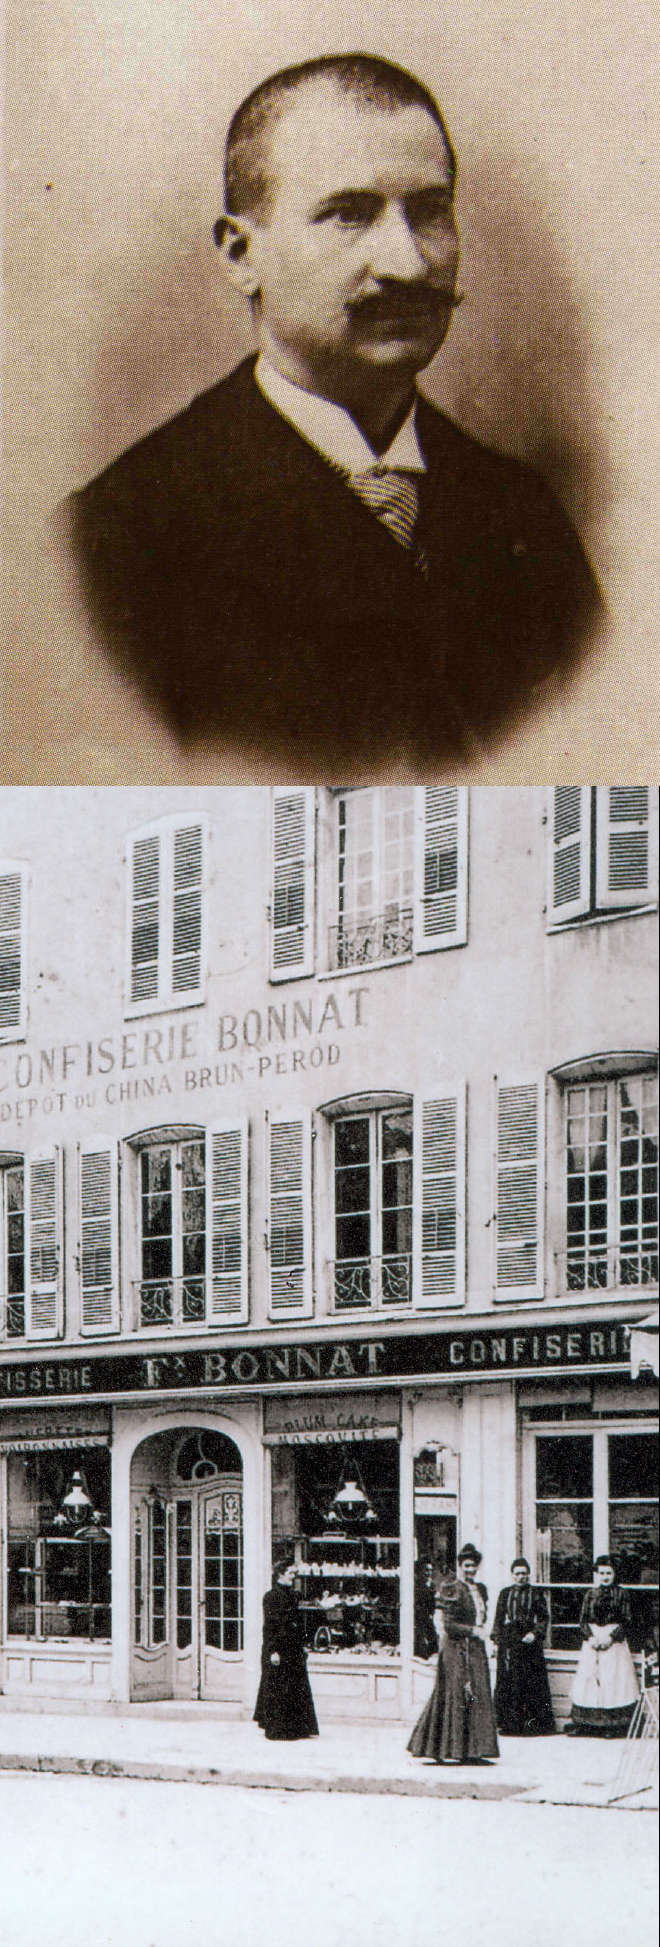 Photo ancienne du Maître-Chocolatier Félix Bonnat, dans les années 1880 ; Il est photographié de trois quart, ses cheveux bruns sont très courts et il porte une moustache brune taillée en crocs. Il a l’air grave et décidé. Il porte une chemise au col droit et une cravate rayée, sous une veste foncée et boutonnée